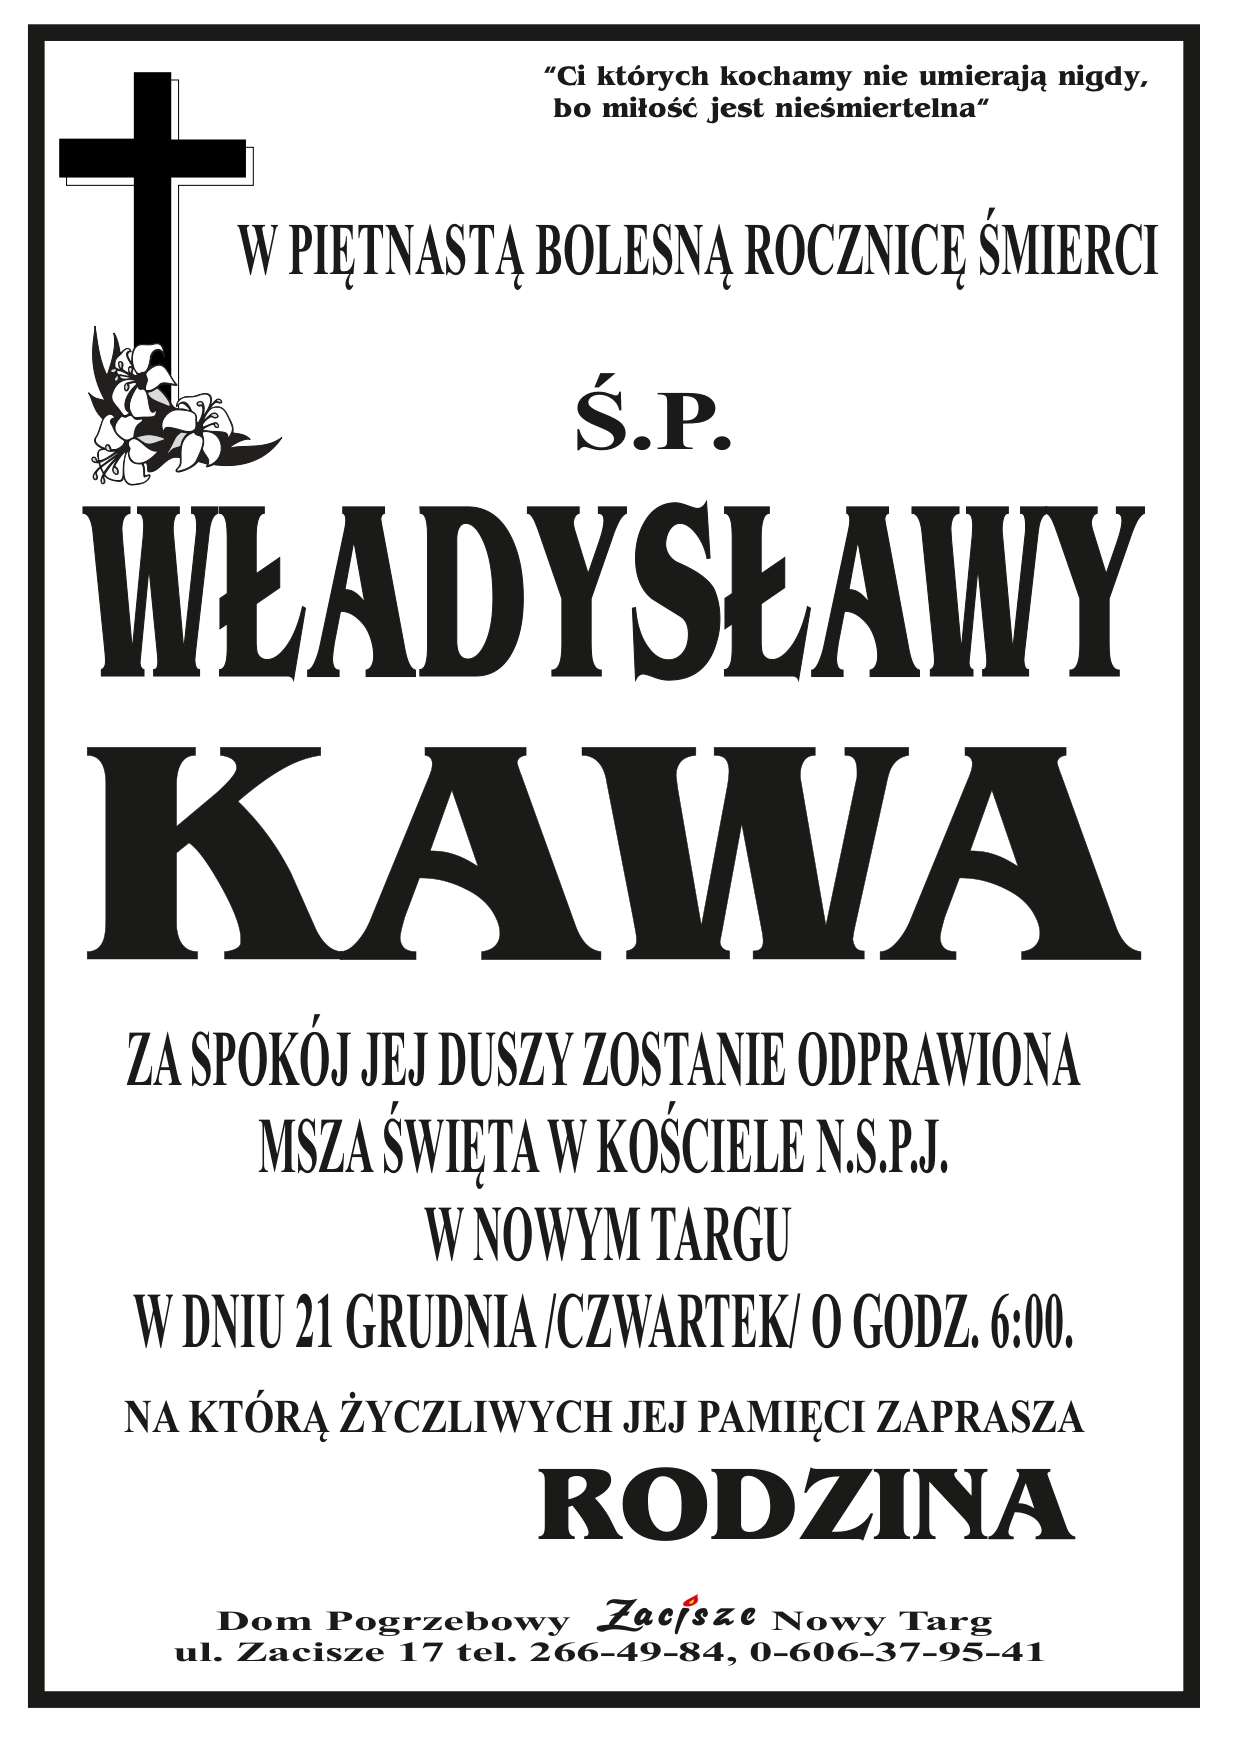 Władysława Kawa